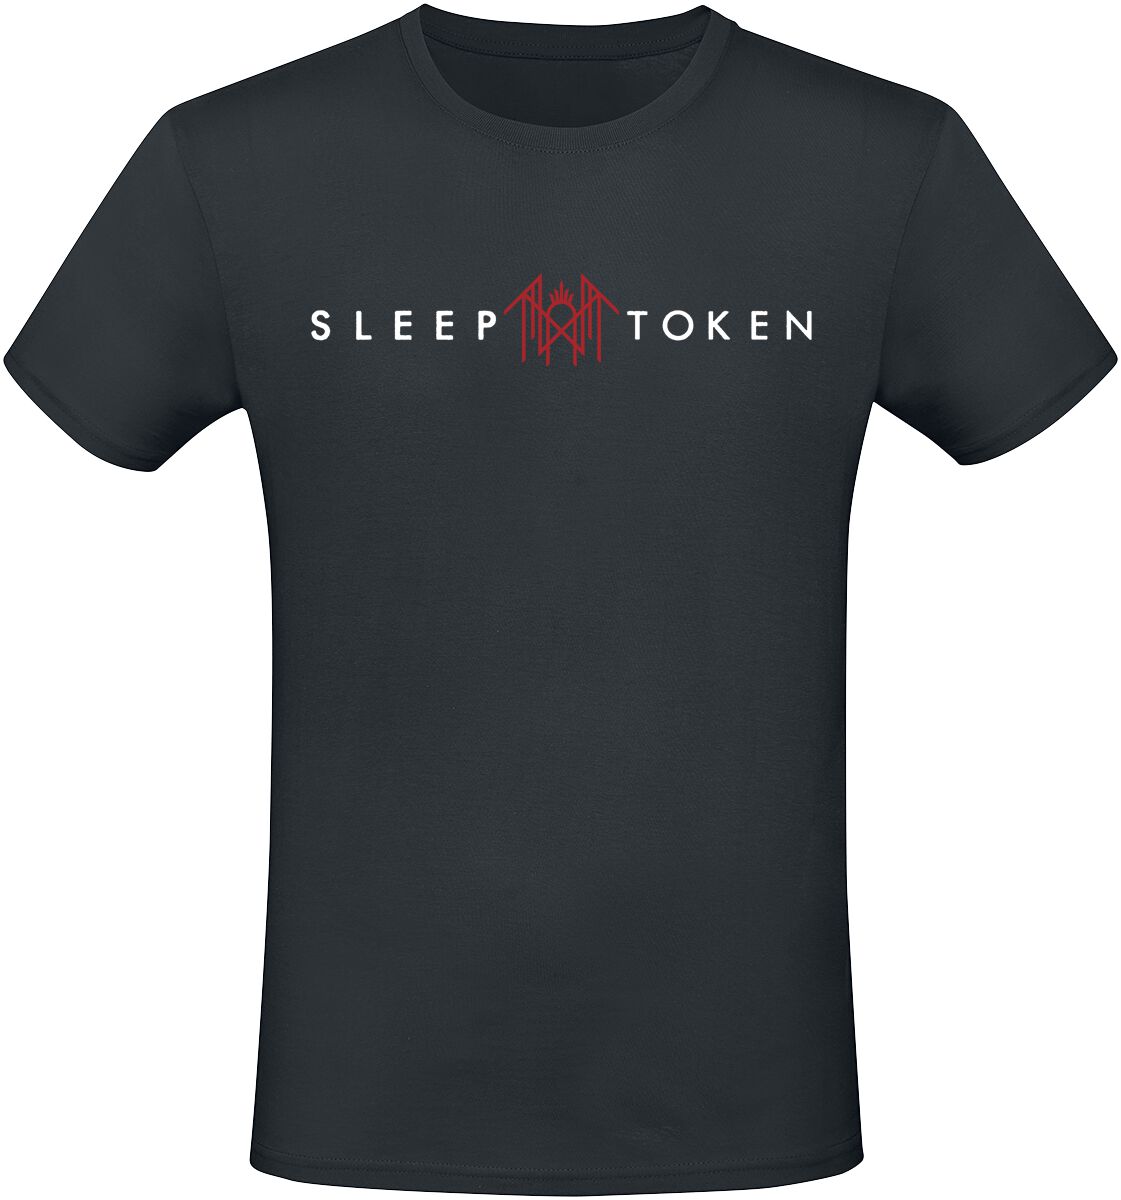 Sleep Token T-Shirt - Staff - S bis 4XL - für Männer - Größe S - schwarz  - EMP exklusives Merchandise!